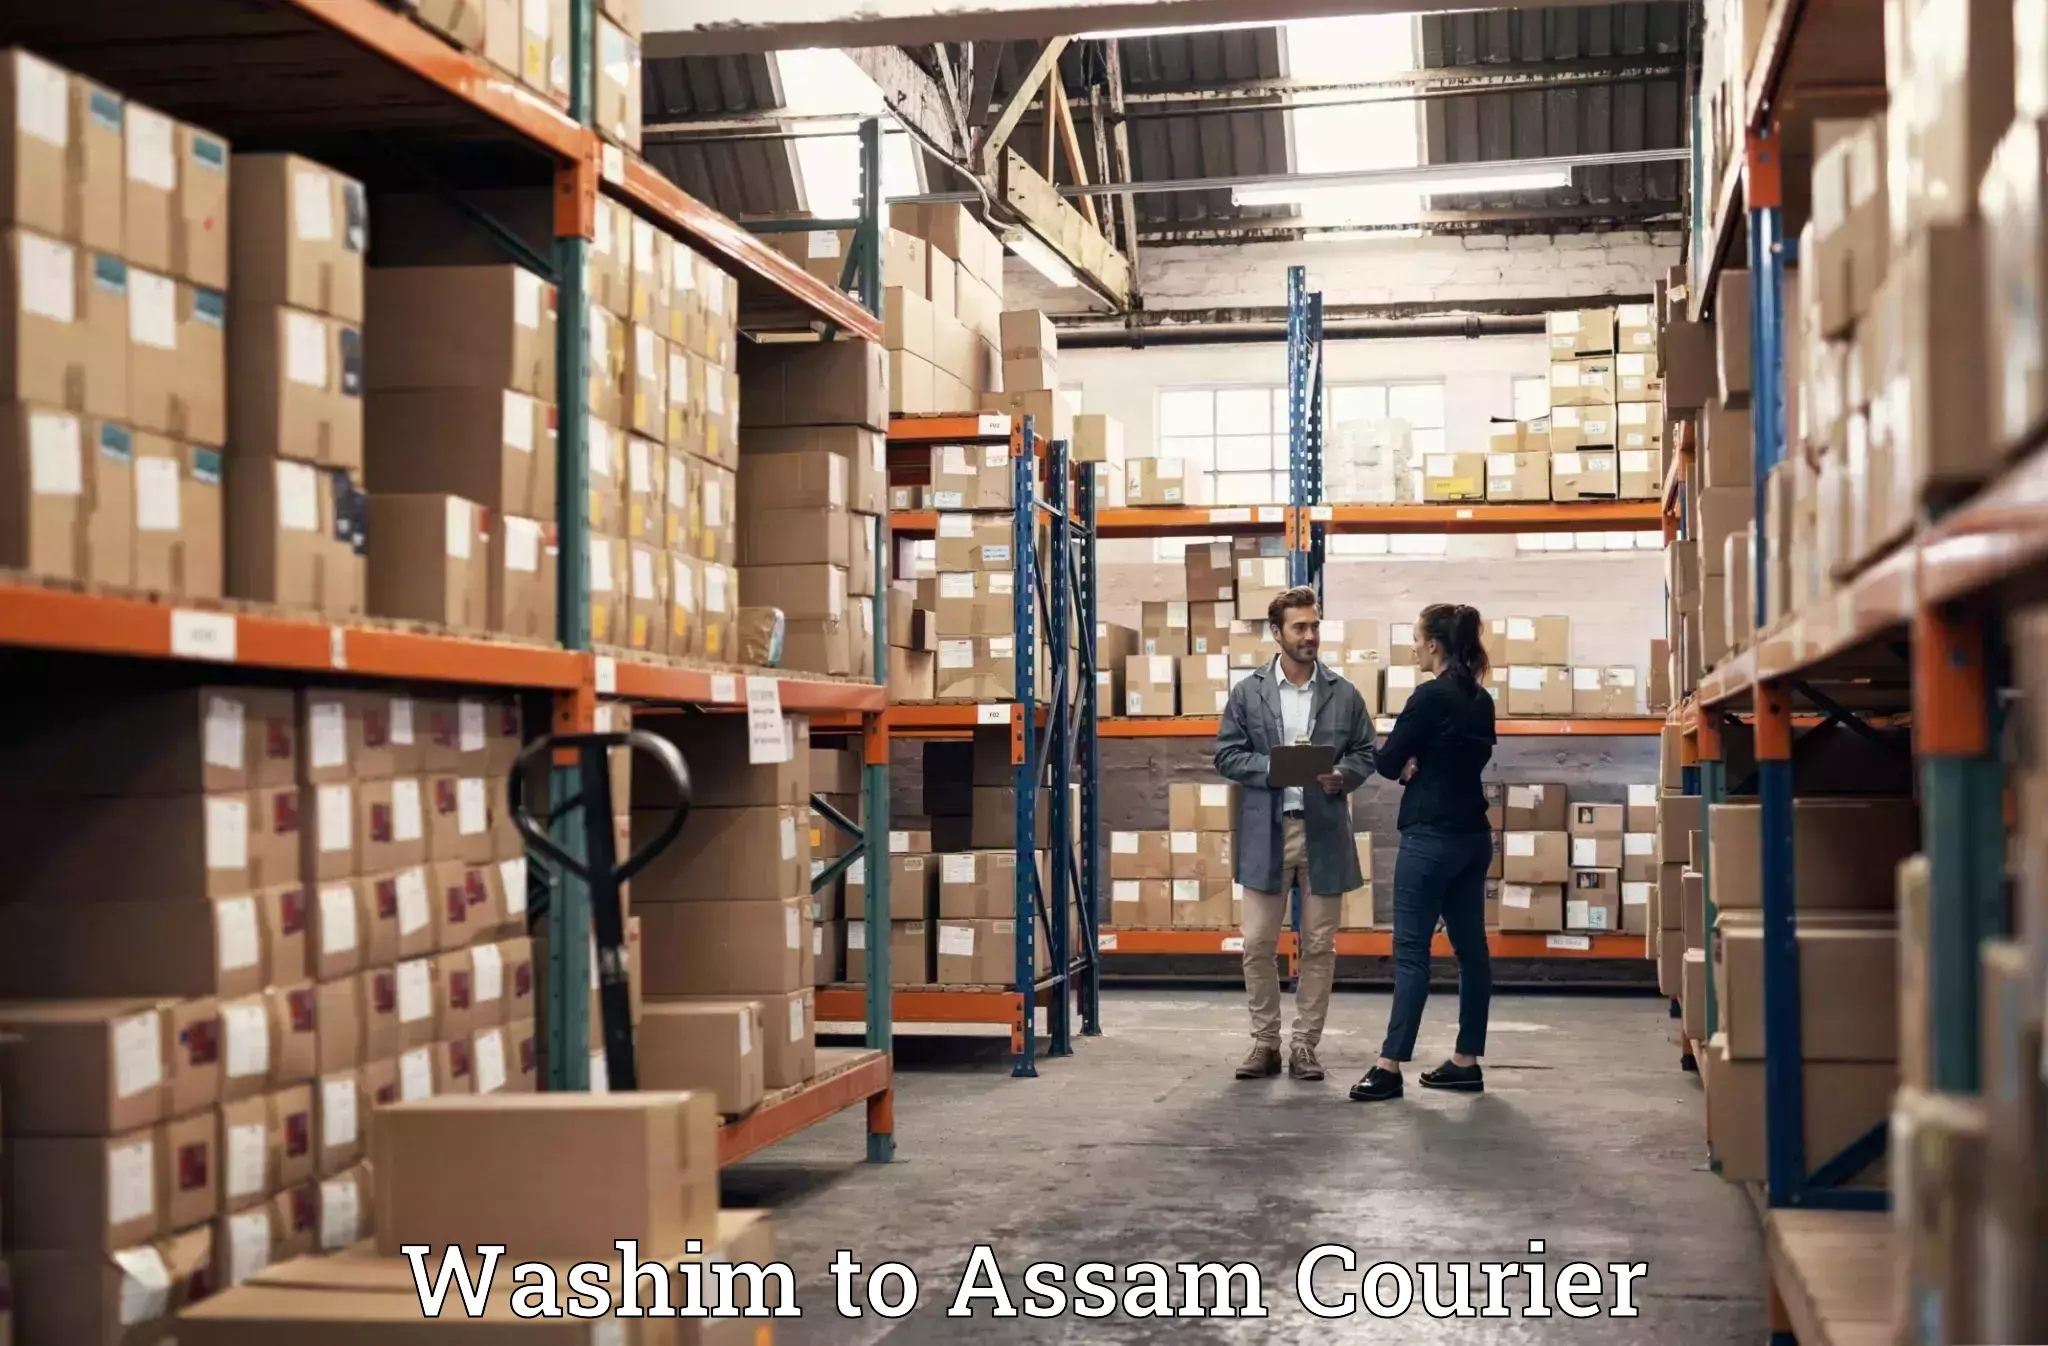 Luggage shipping service Washim to Assam